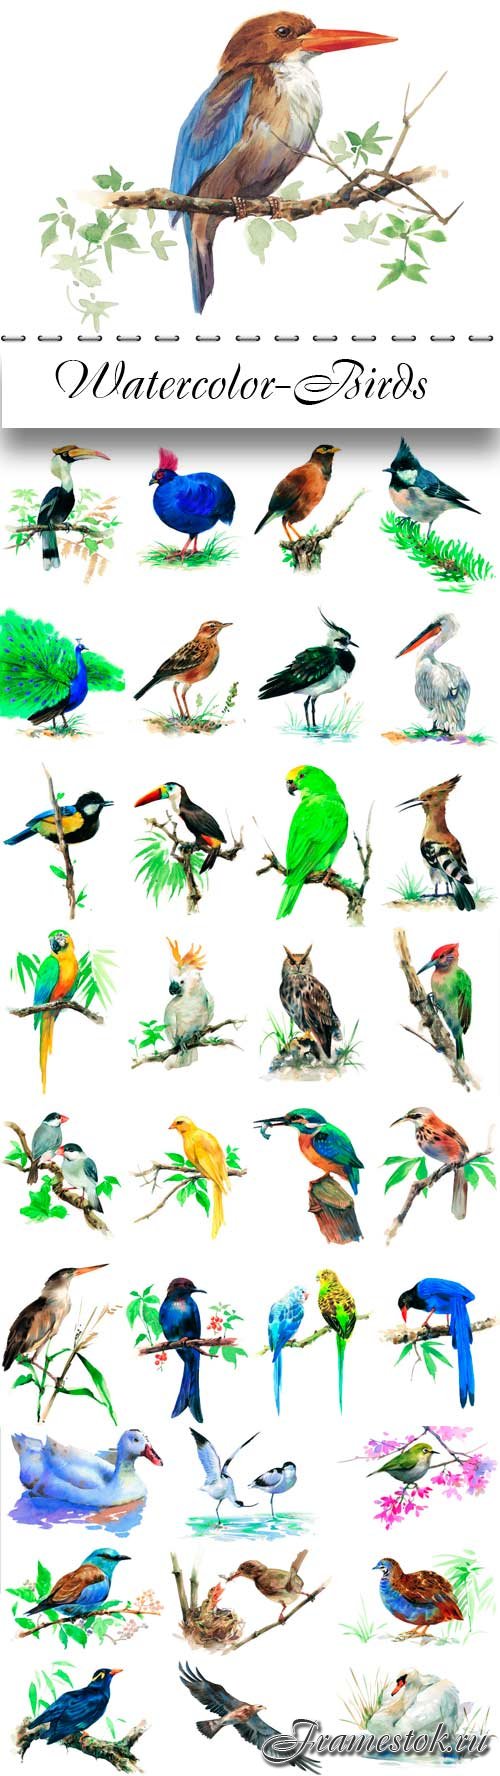 Watercolor- Birds